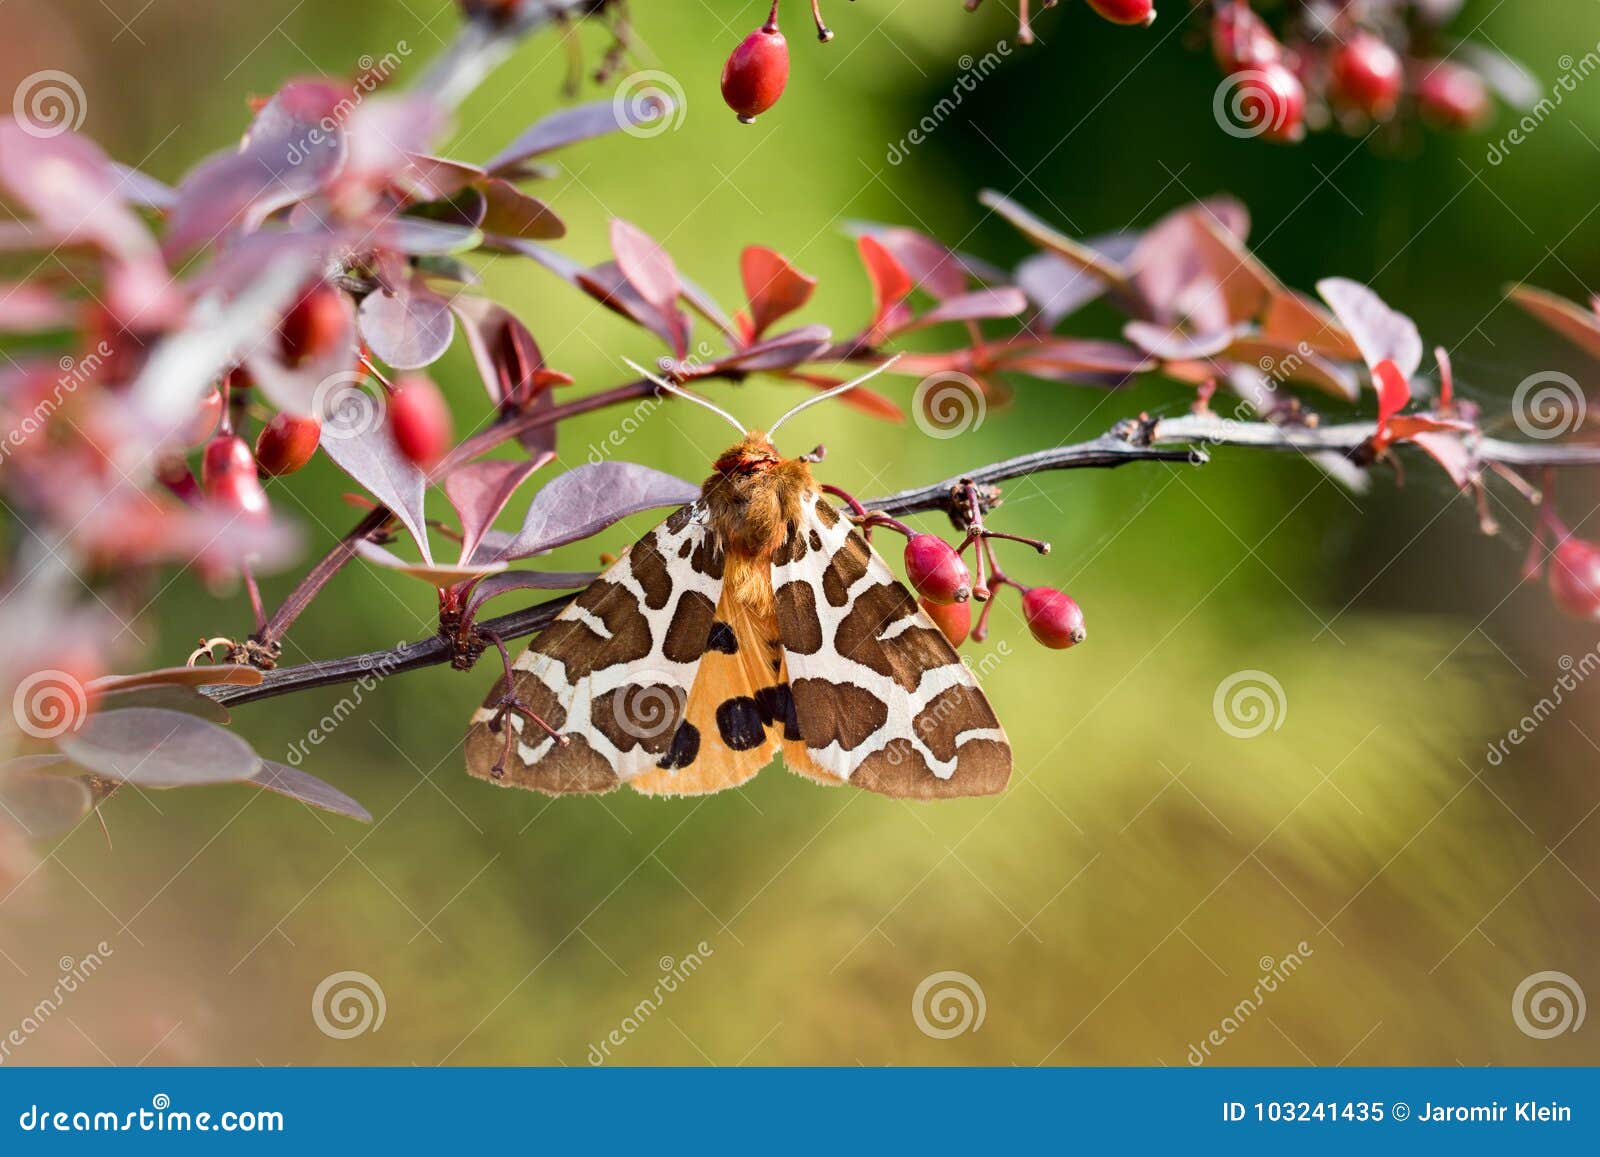 garden tiger moth arctia caja on the bush